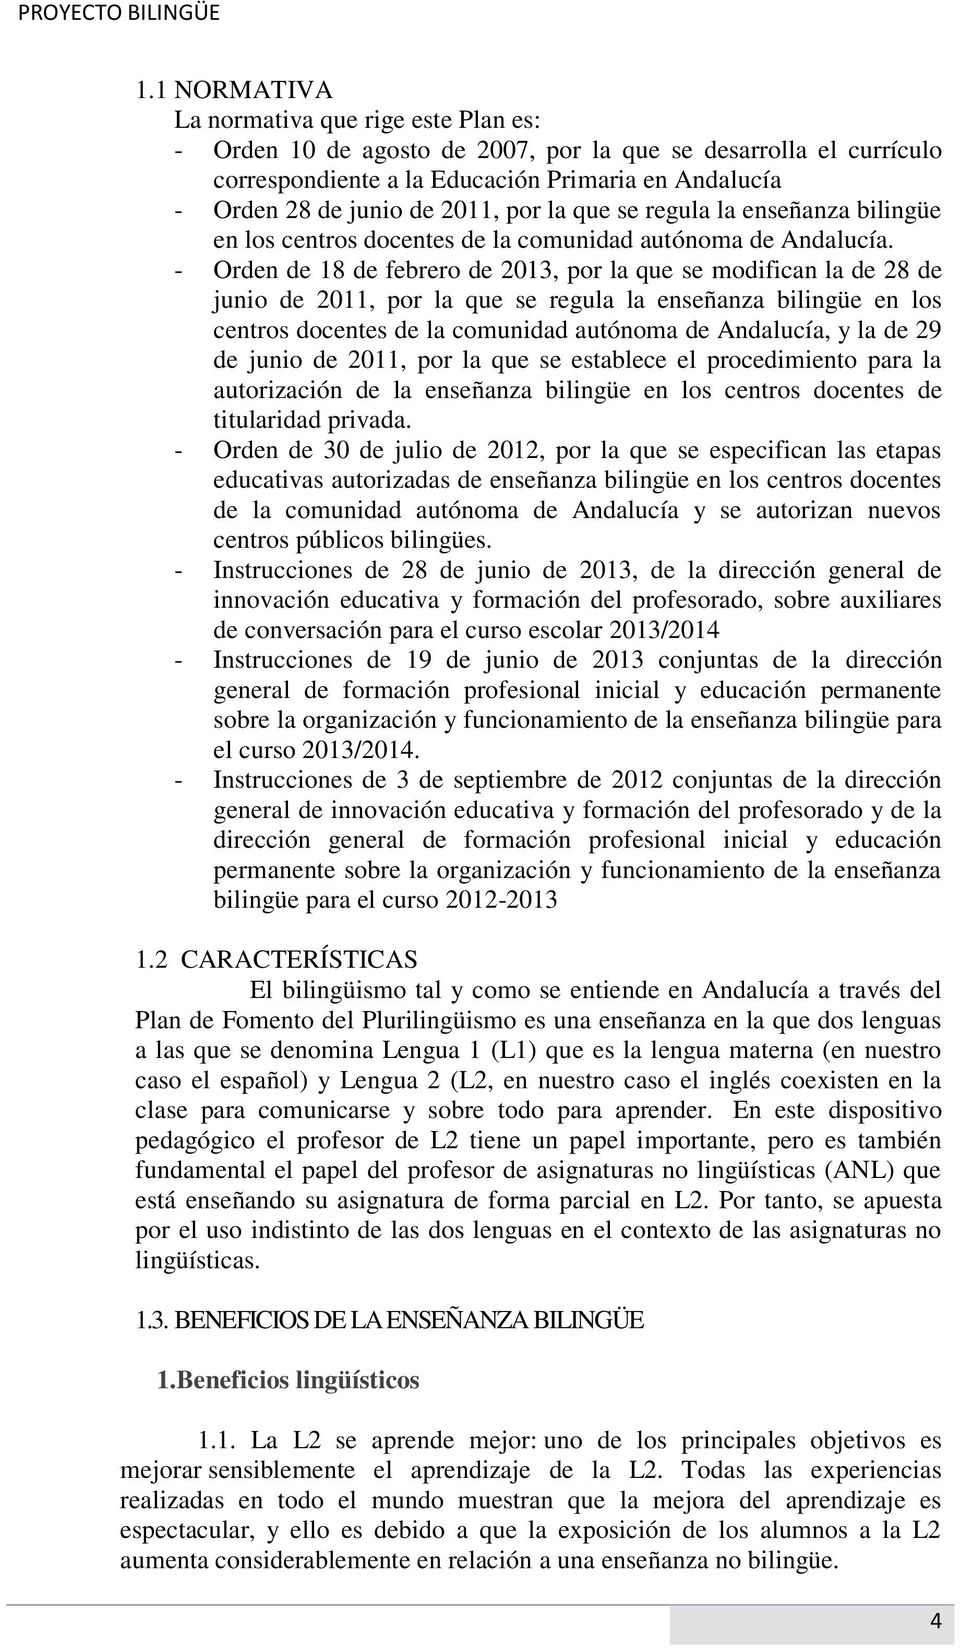 - Orden de 18 de febrero de 2013, por la que se modifican la de 28 de junio de 2011, por la que se regula la enseñanza bilingüe en los centros docentes de la comunidad autónoma de Andalucía, y la de